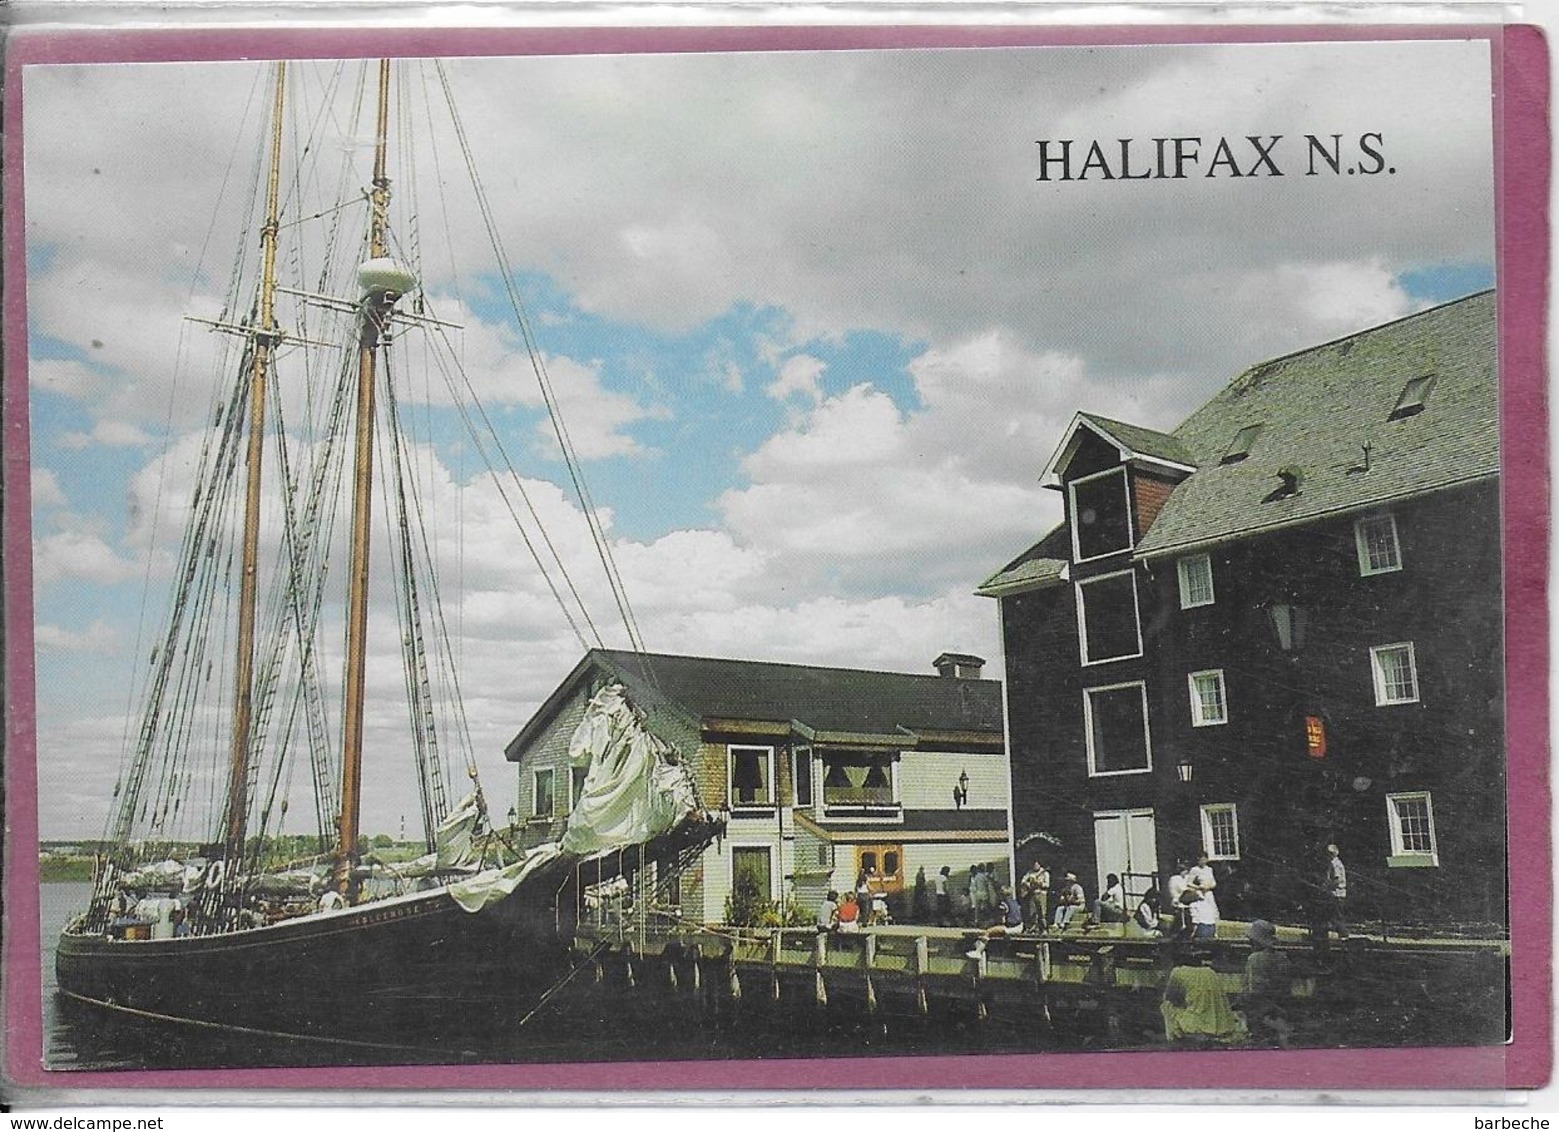 HALIFAX N.S. - Halifax